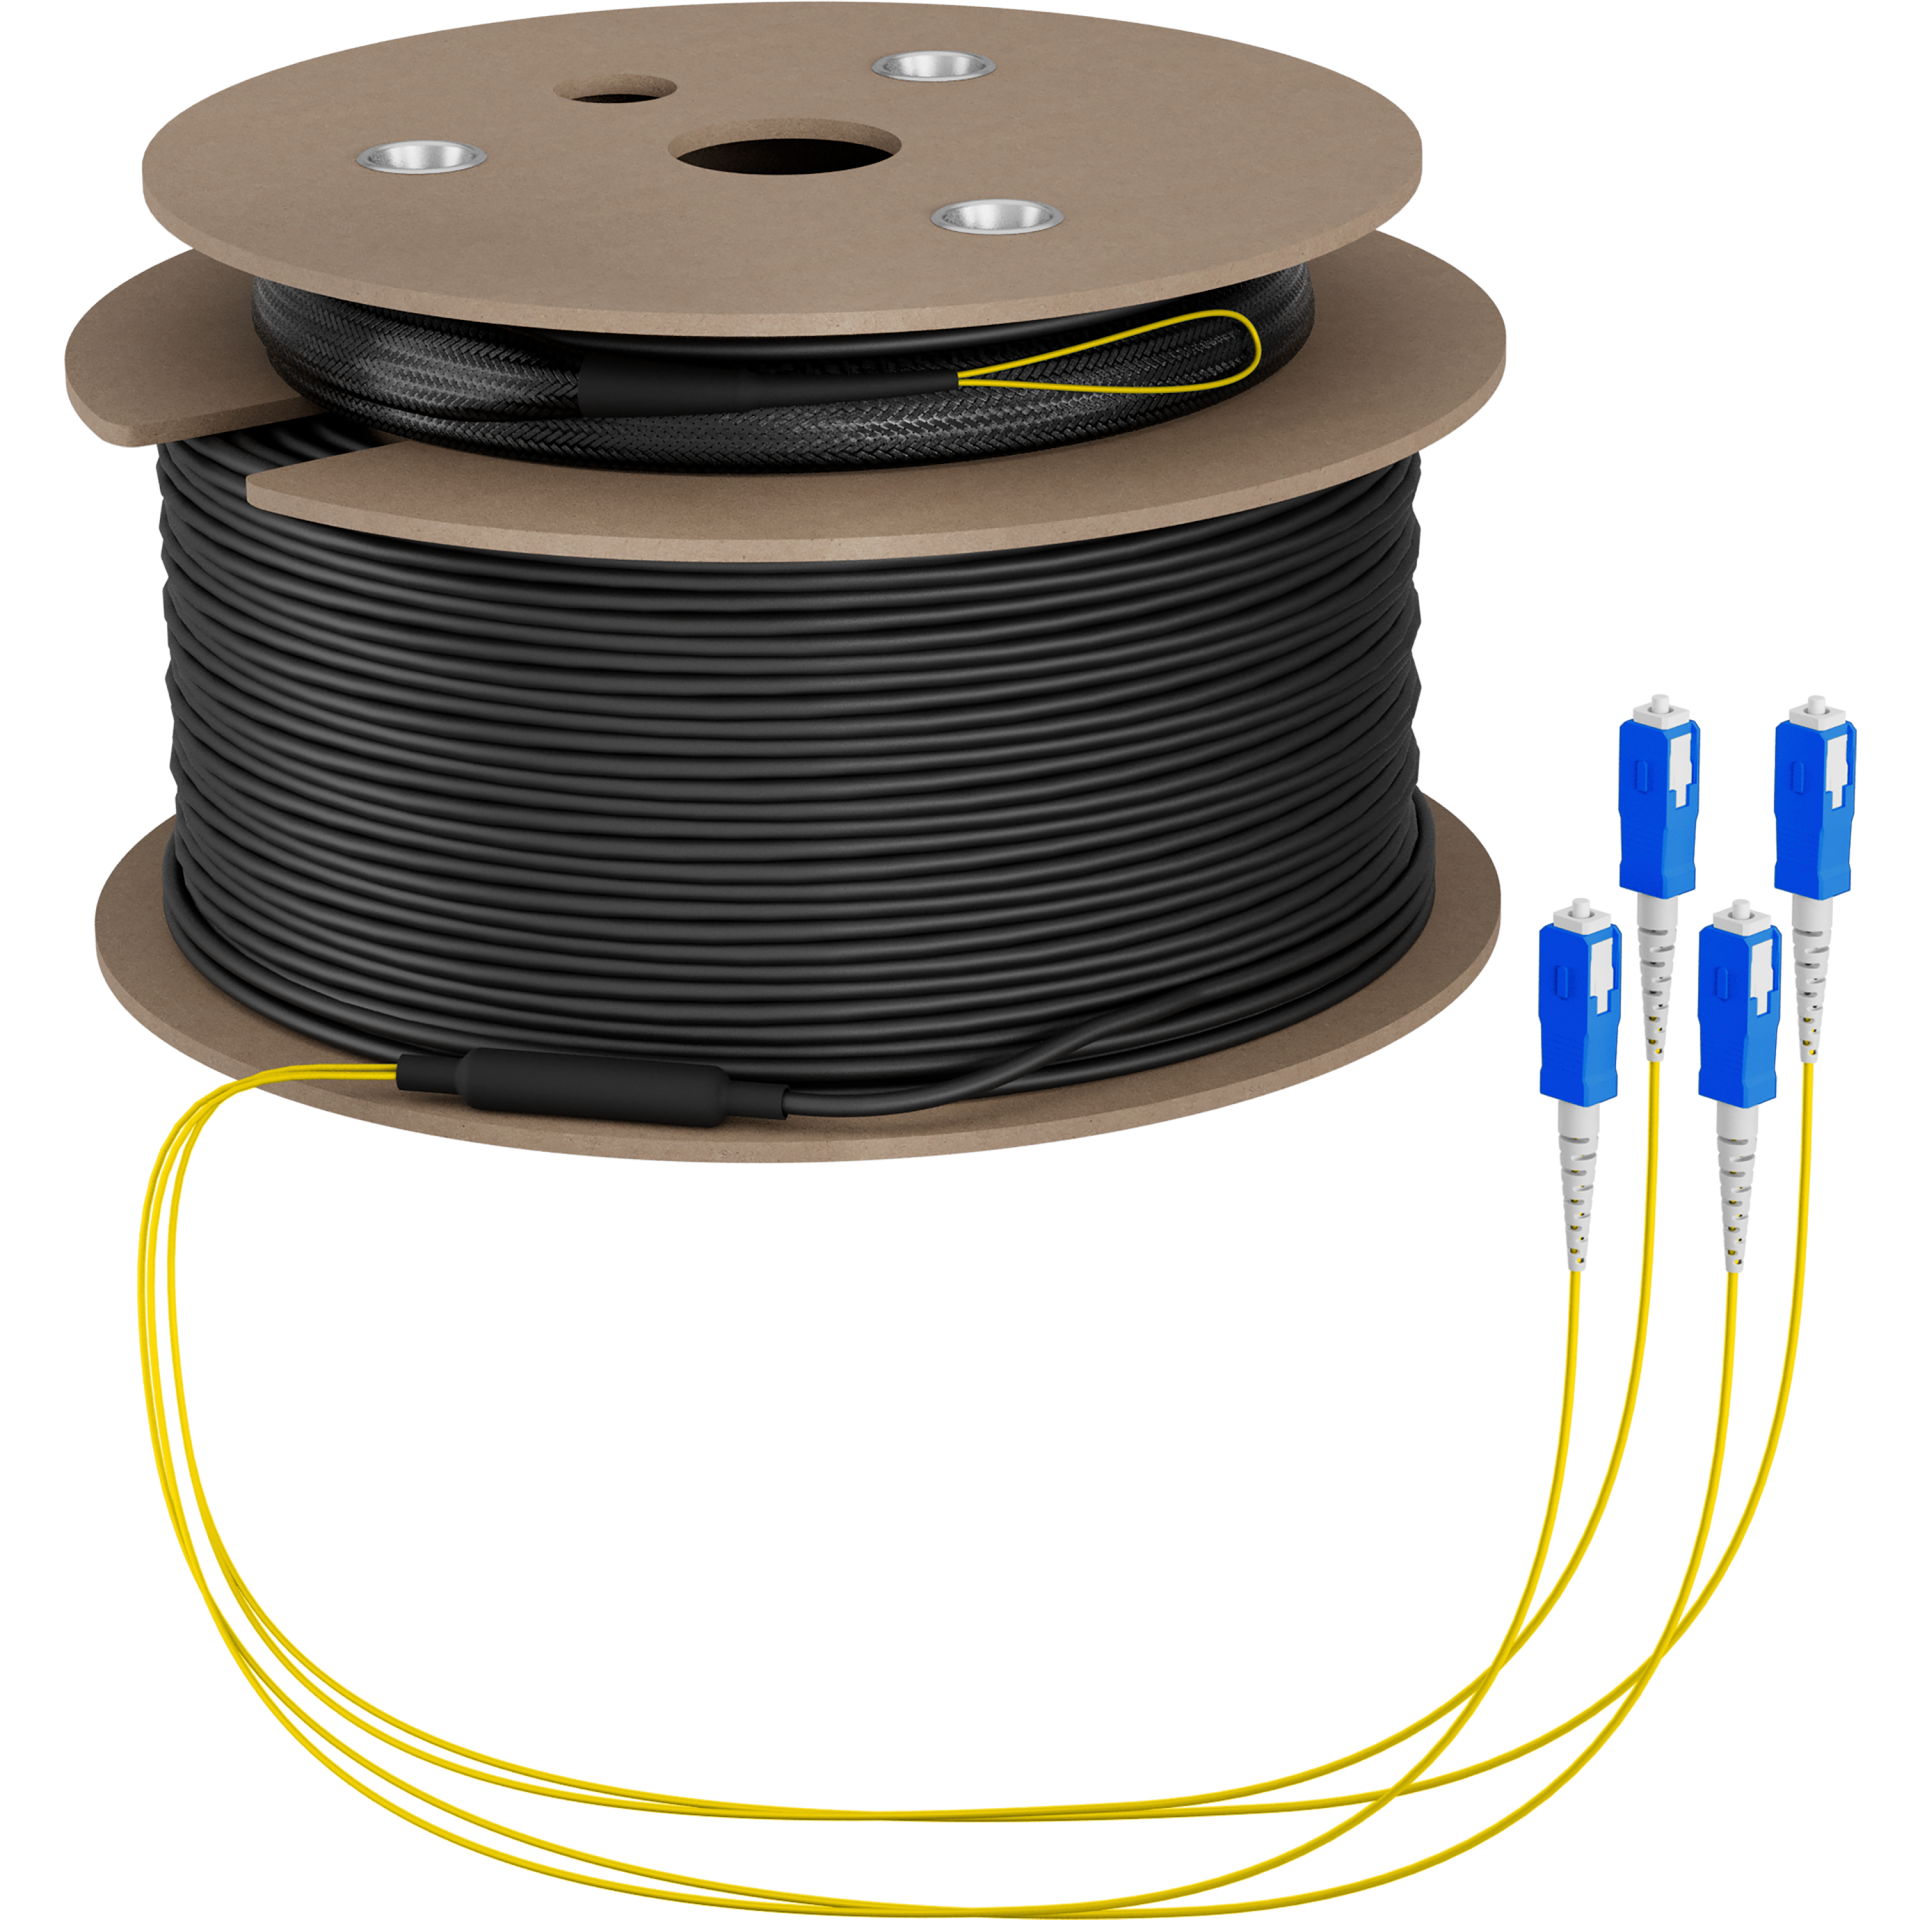 Trunk cable U-DQ(ZN)BH OS2 4E (1x4) SC-SC,150m Dca LSZH